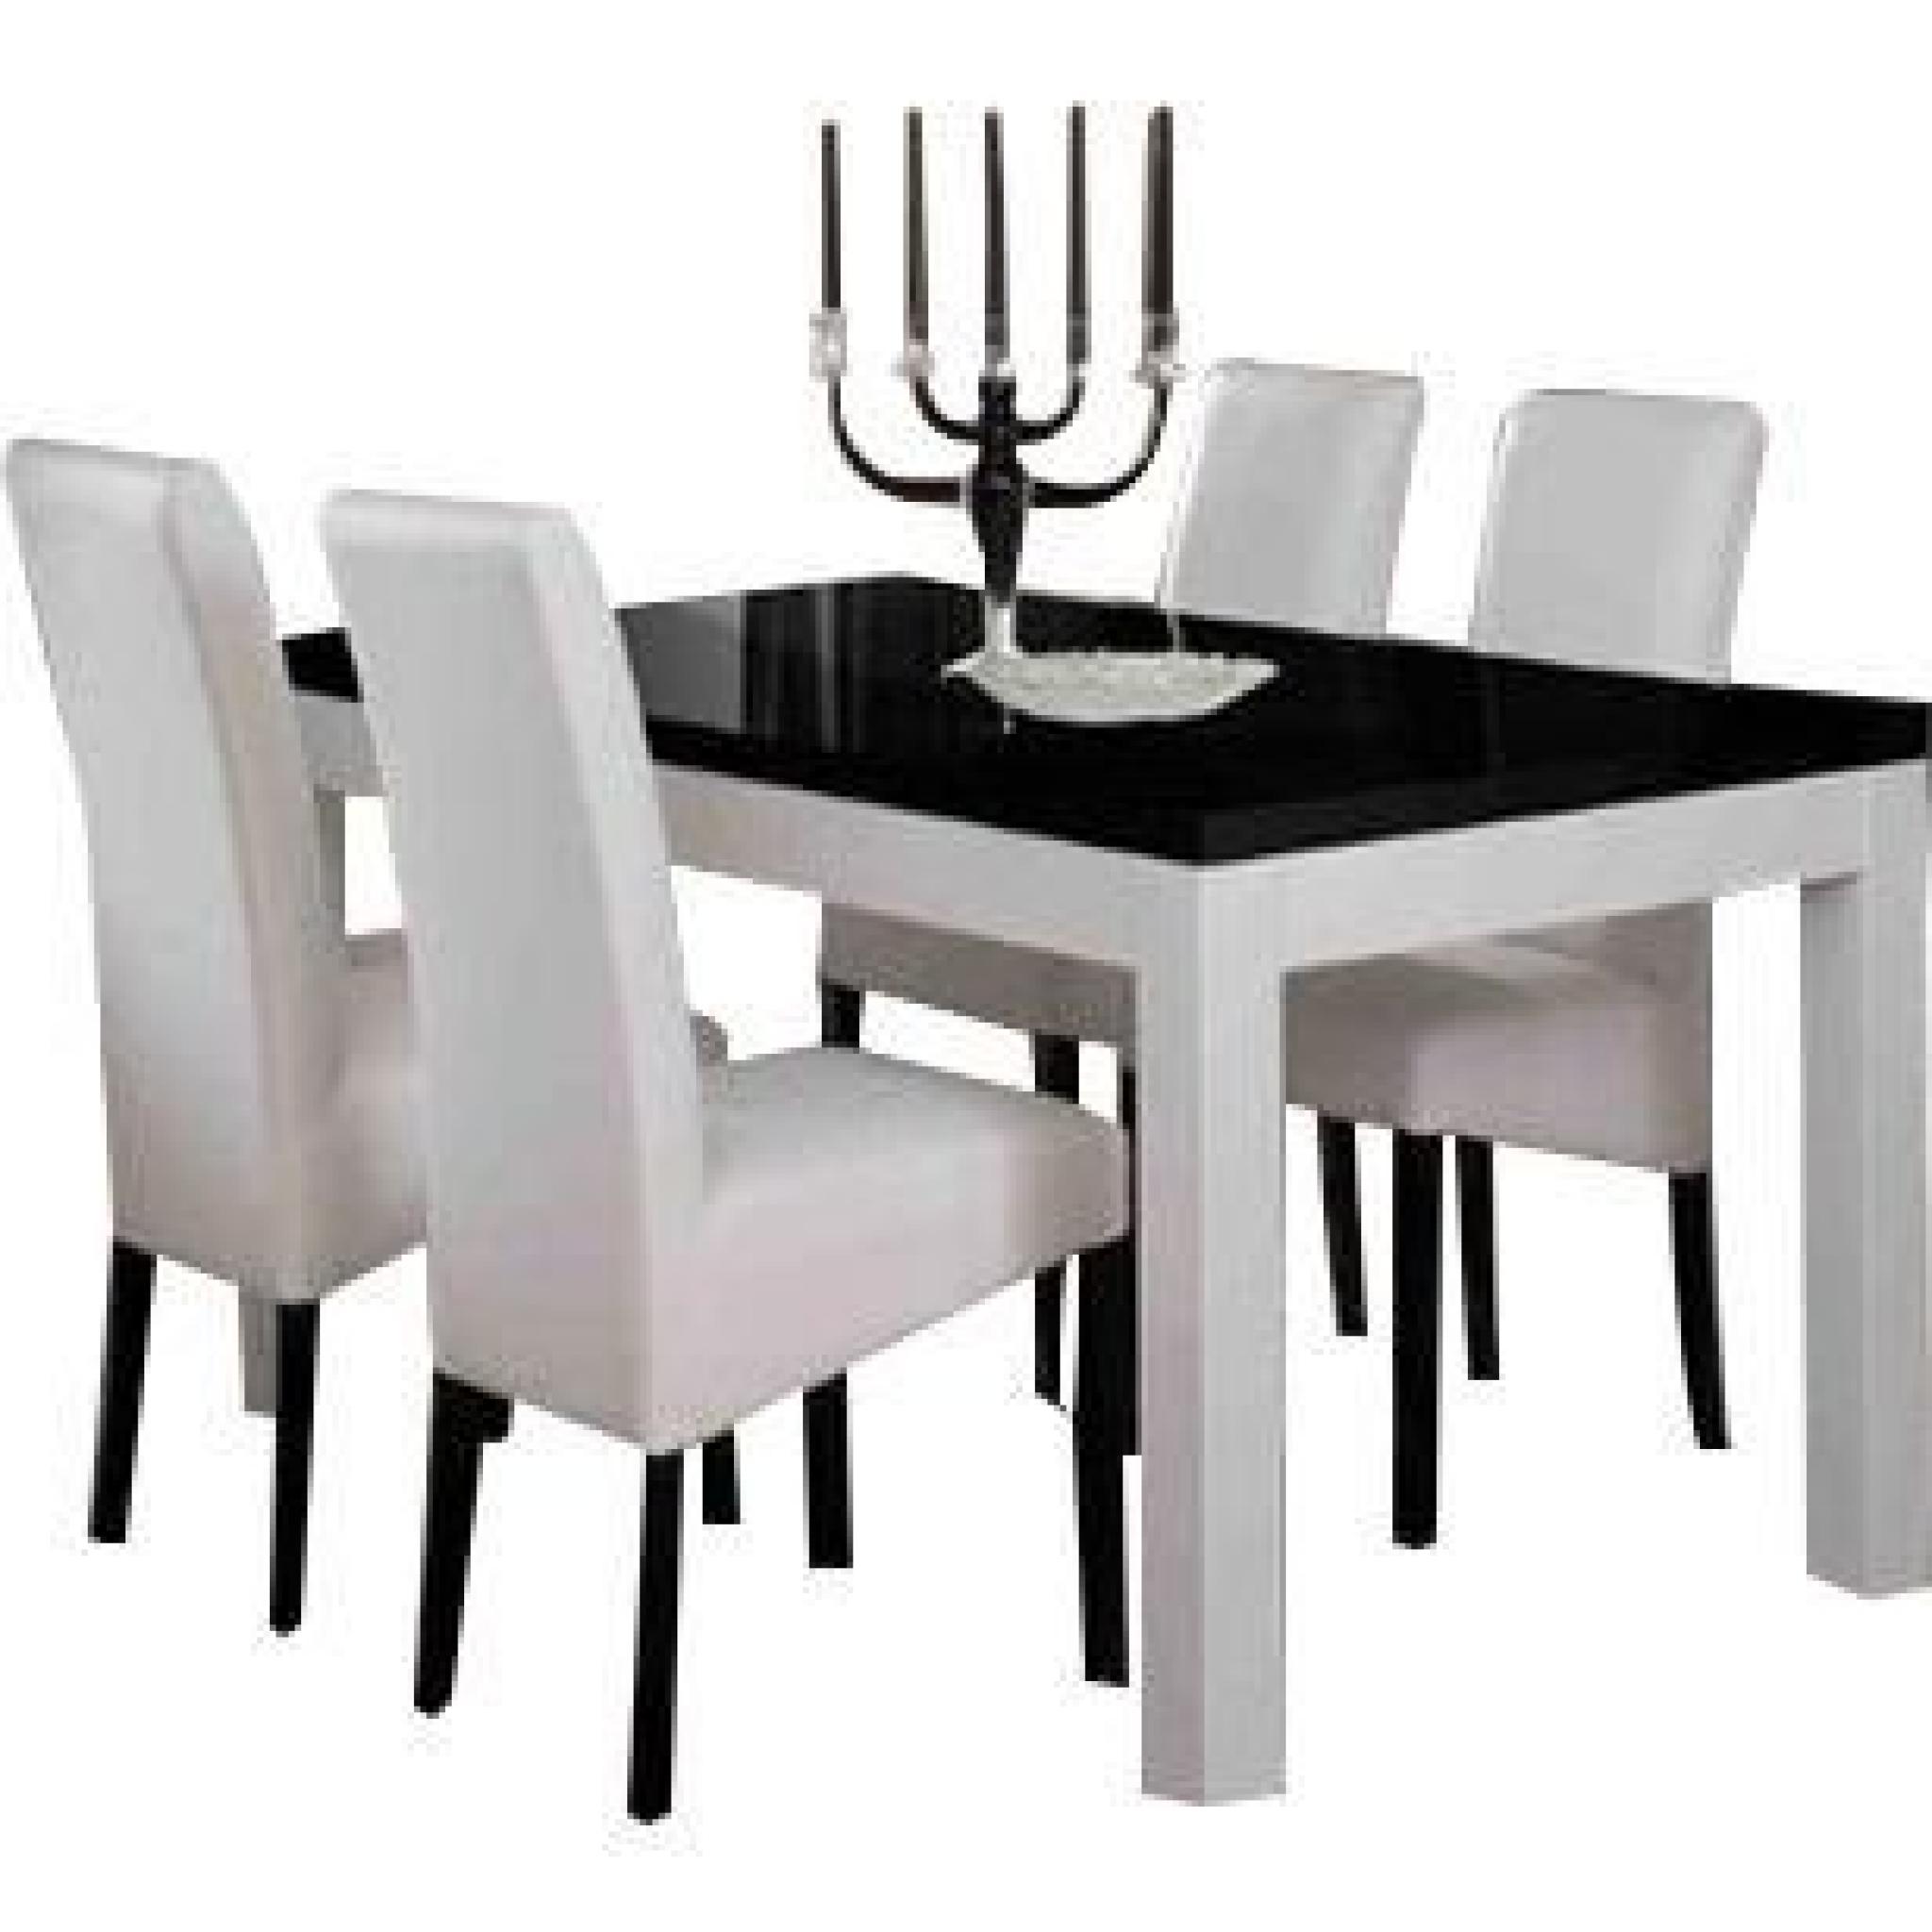 Table 190 cm blanc et noir + 4 chaises coloris blanc et noir